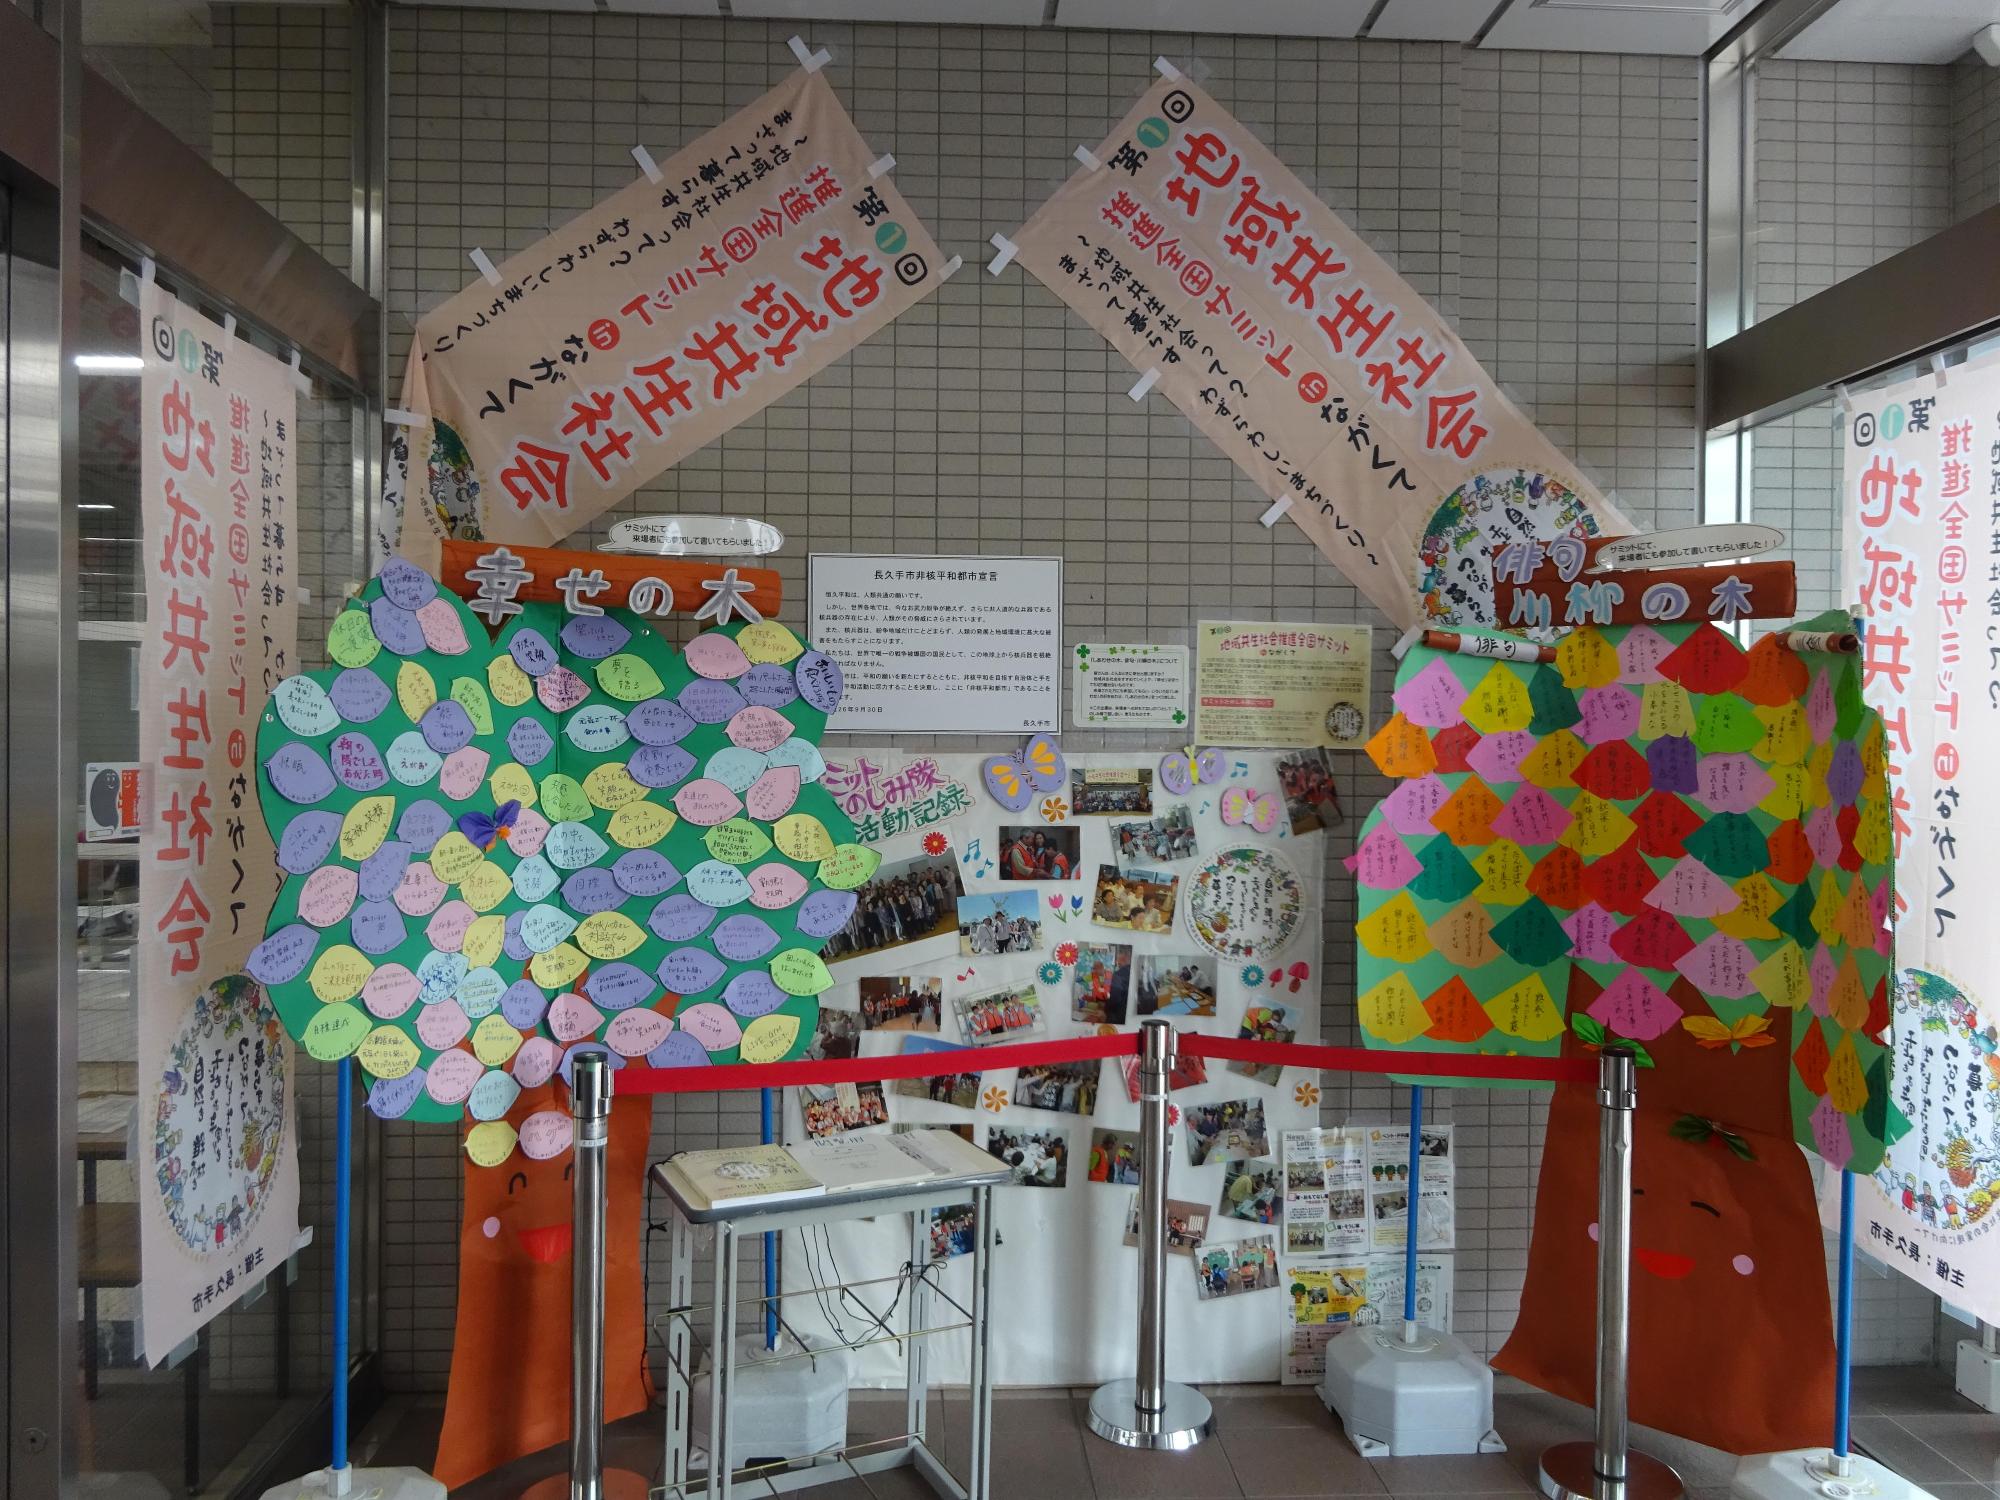 幸せの木と俳句川柳の木の間に模造紙に飾られた写真が展示され、地域共生社会ののぼり旗が展示されている玄関前の写真